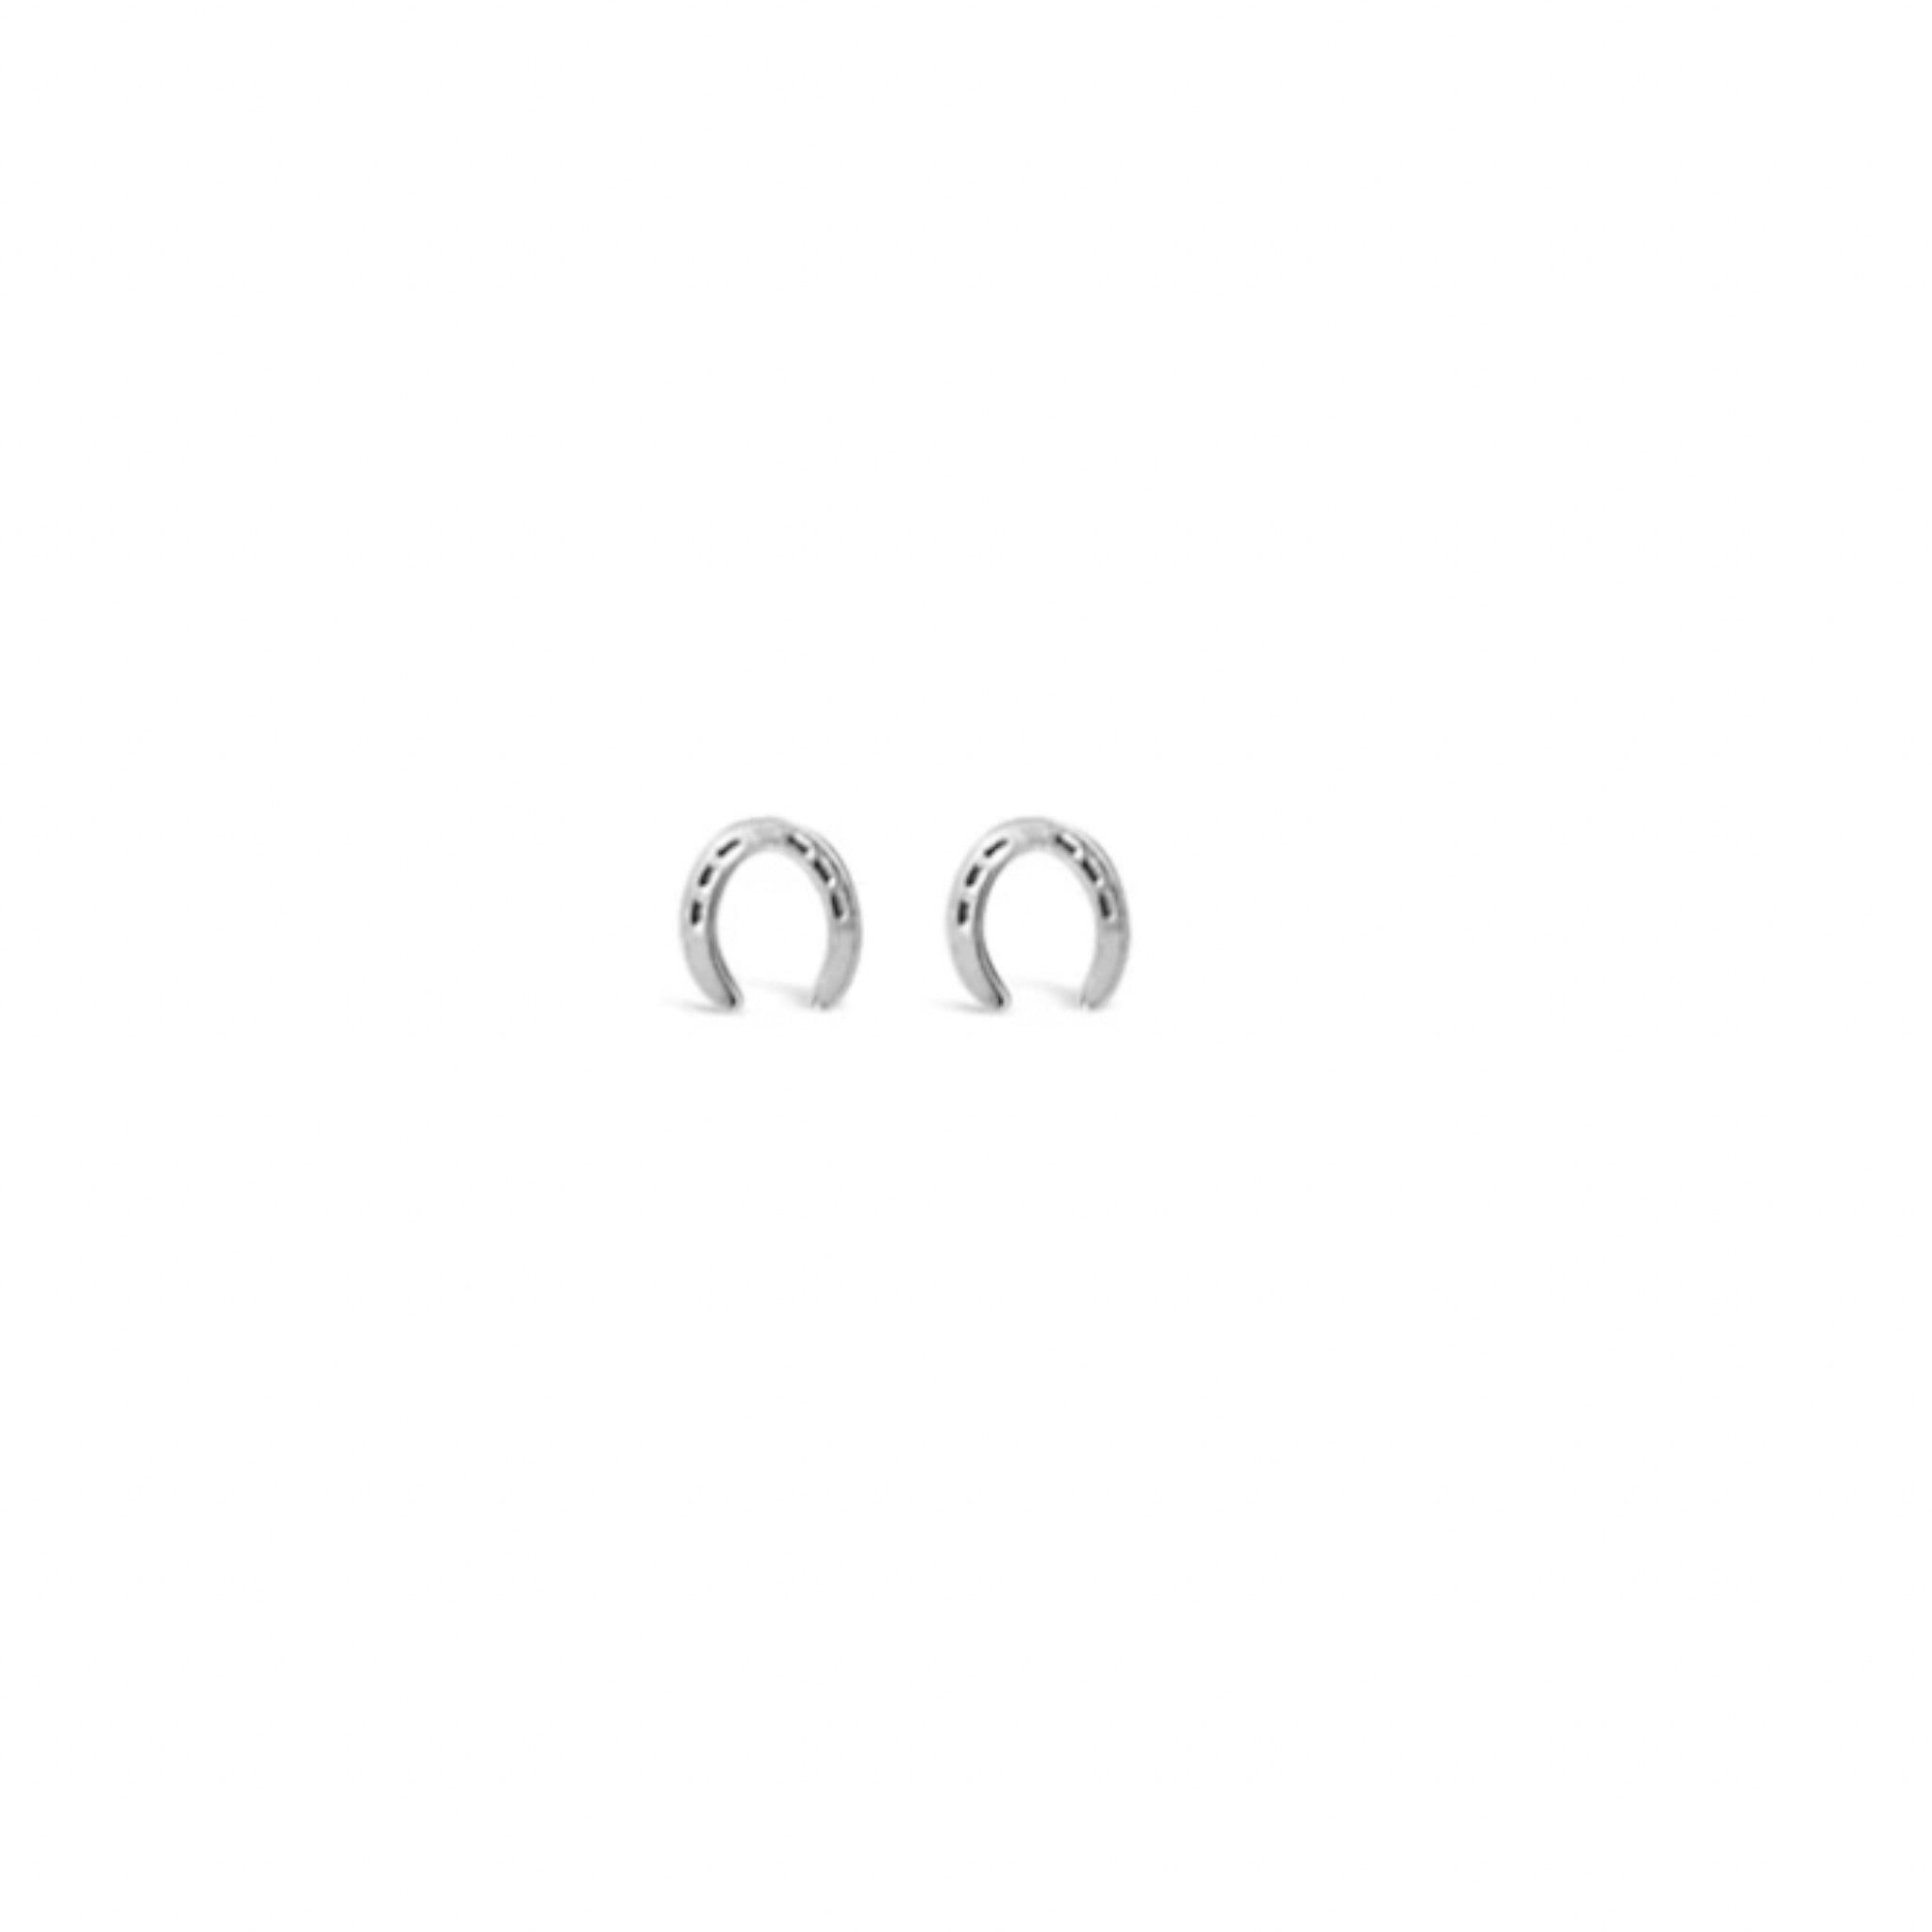 Sierra Winter - Oakley Earrings - Sterling Silver